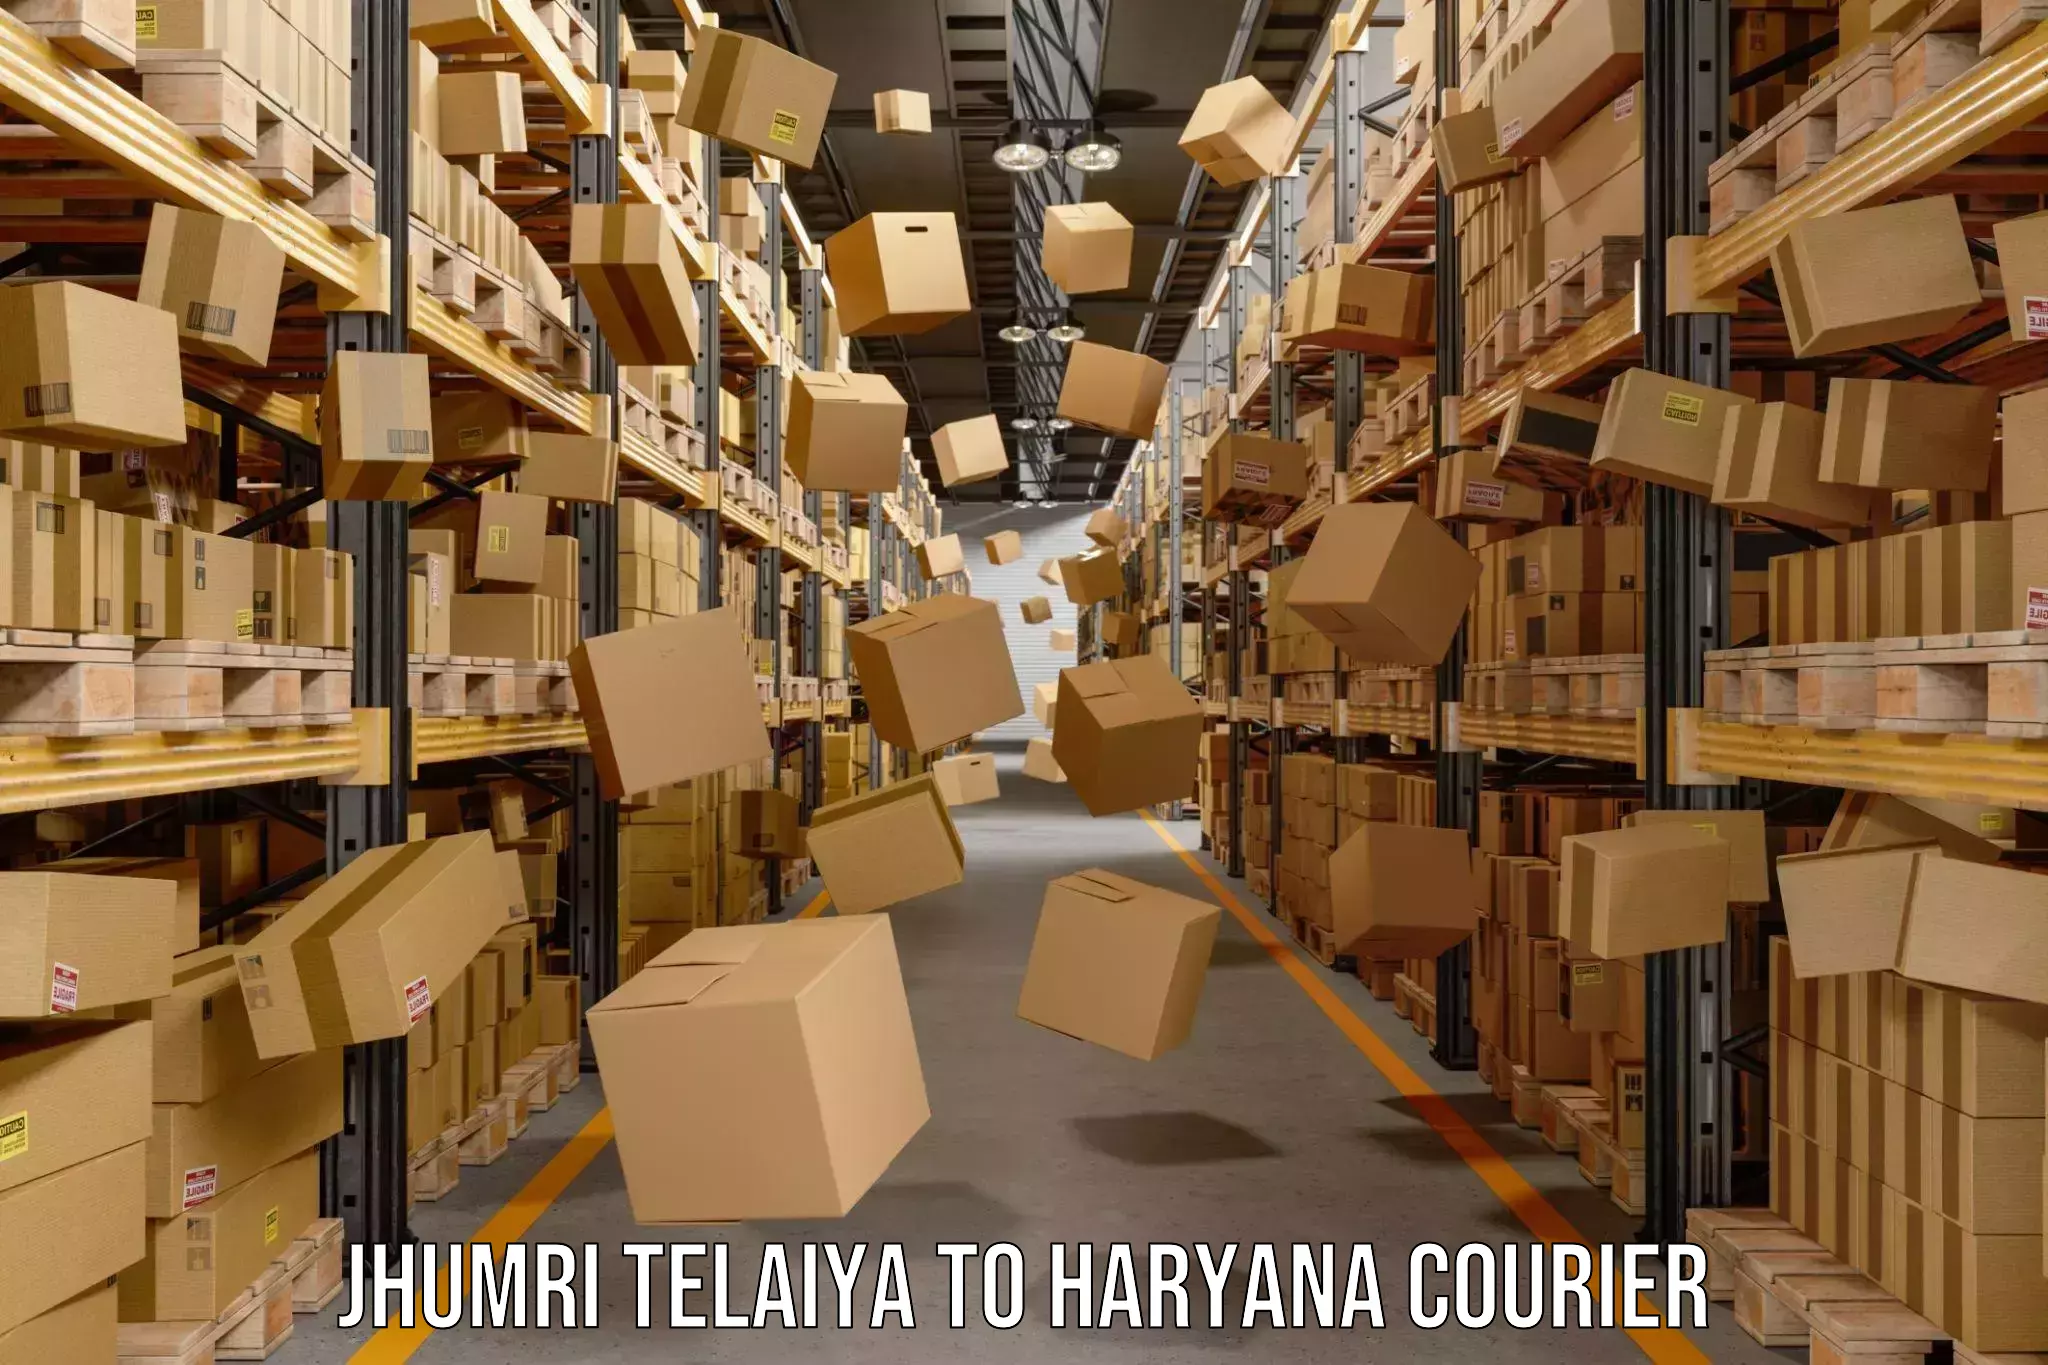 Courier insurance Jhumri Telaiya to Chaudhary Charan Singh Haryana Agricultural University Hisar